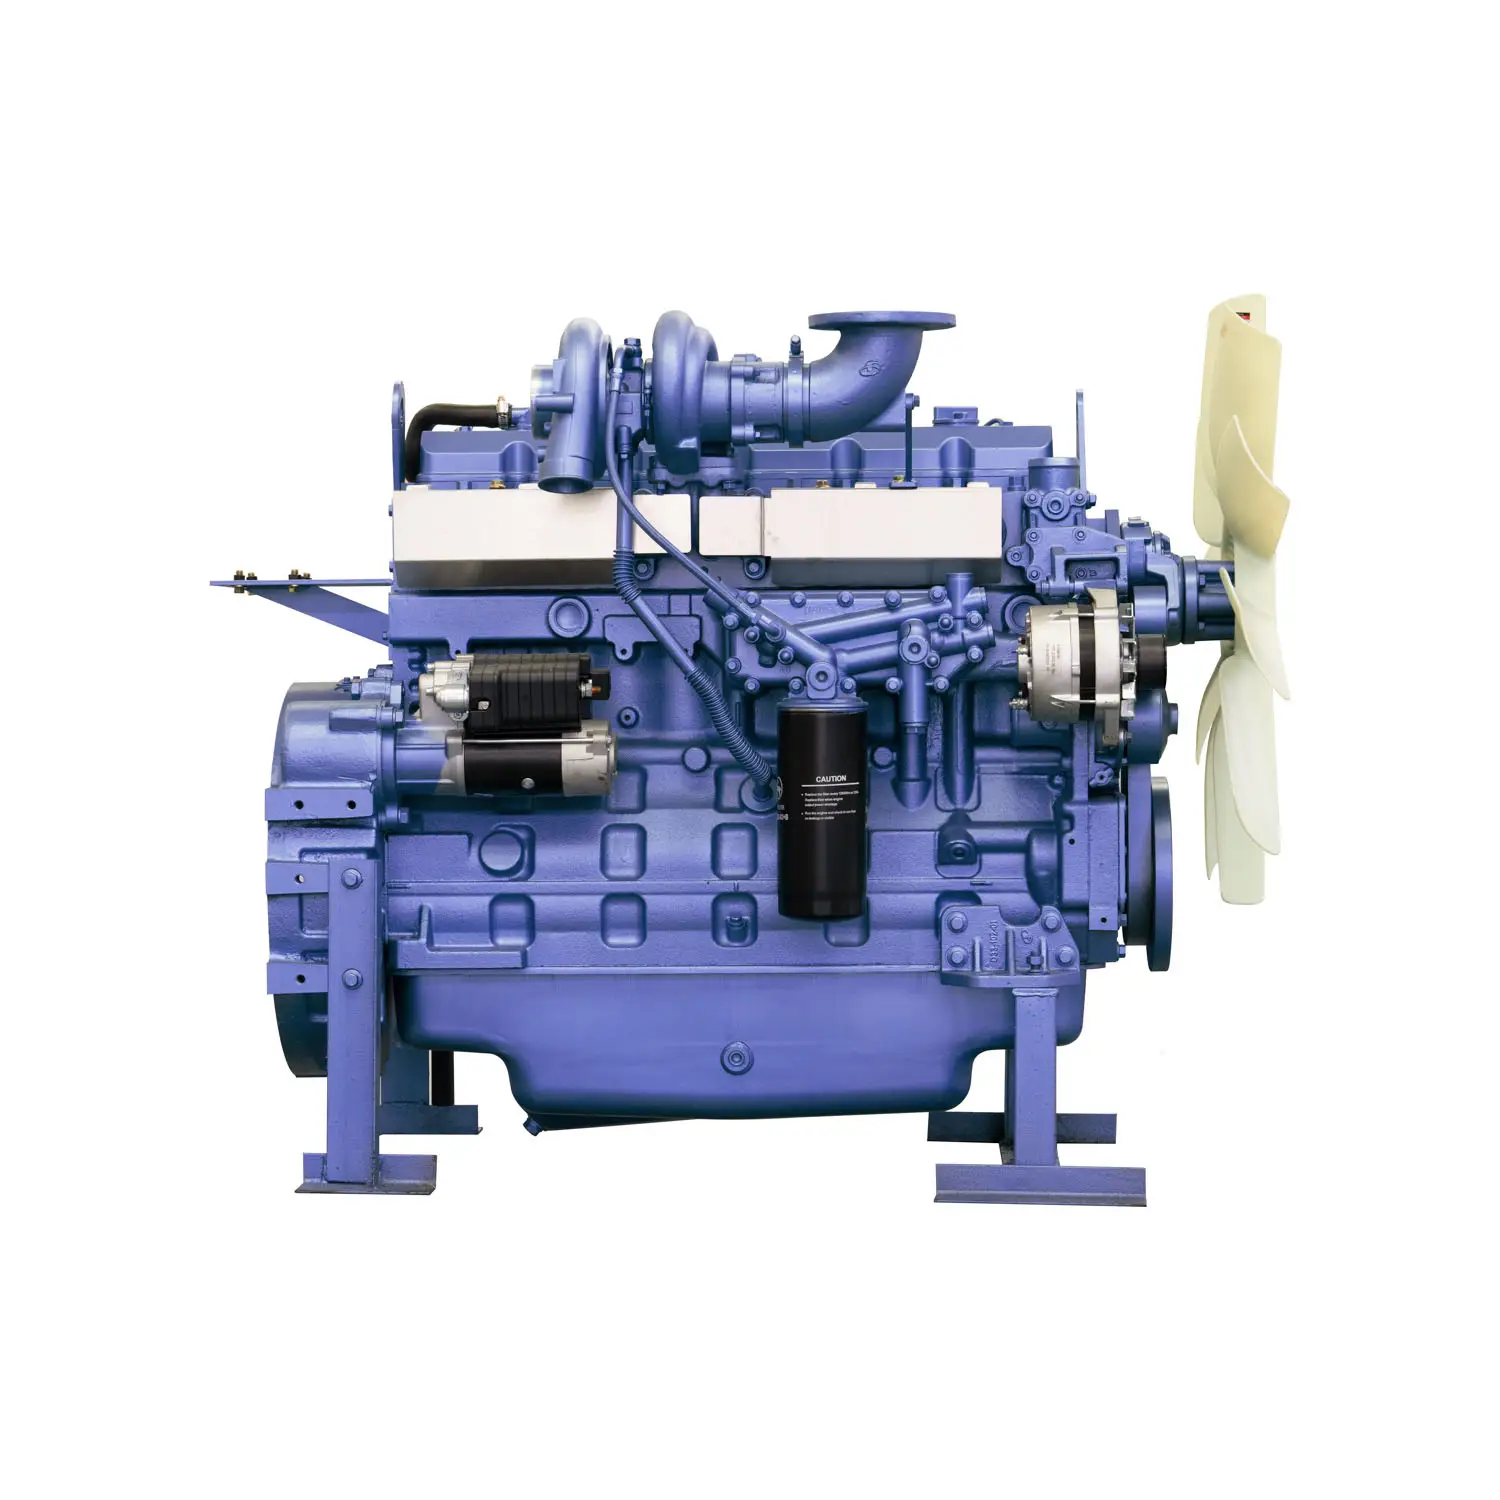 मूल डीजल इंजन Qsb5.9 सी क्यूमिन के लिए ड्रिलिंग मशीन पर प्रयोग किया जाता है